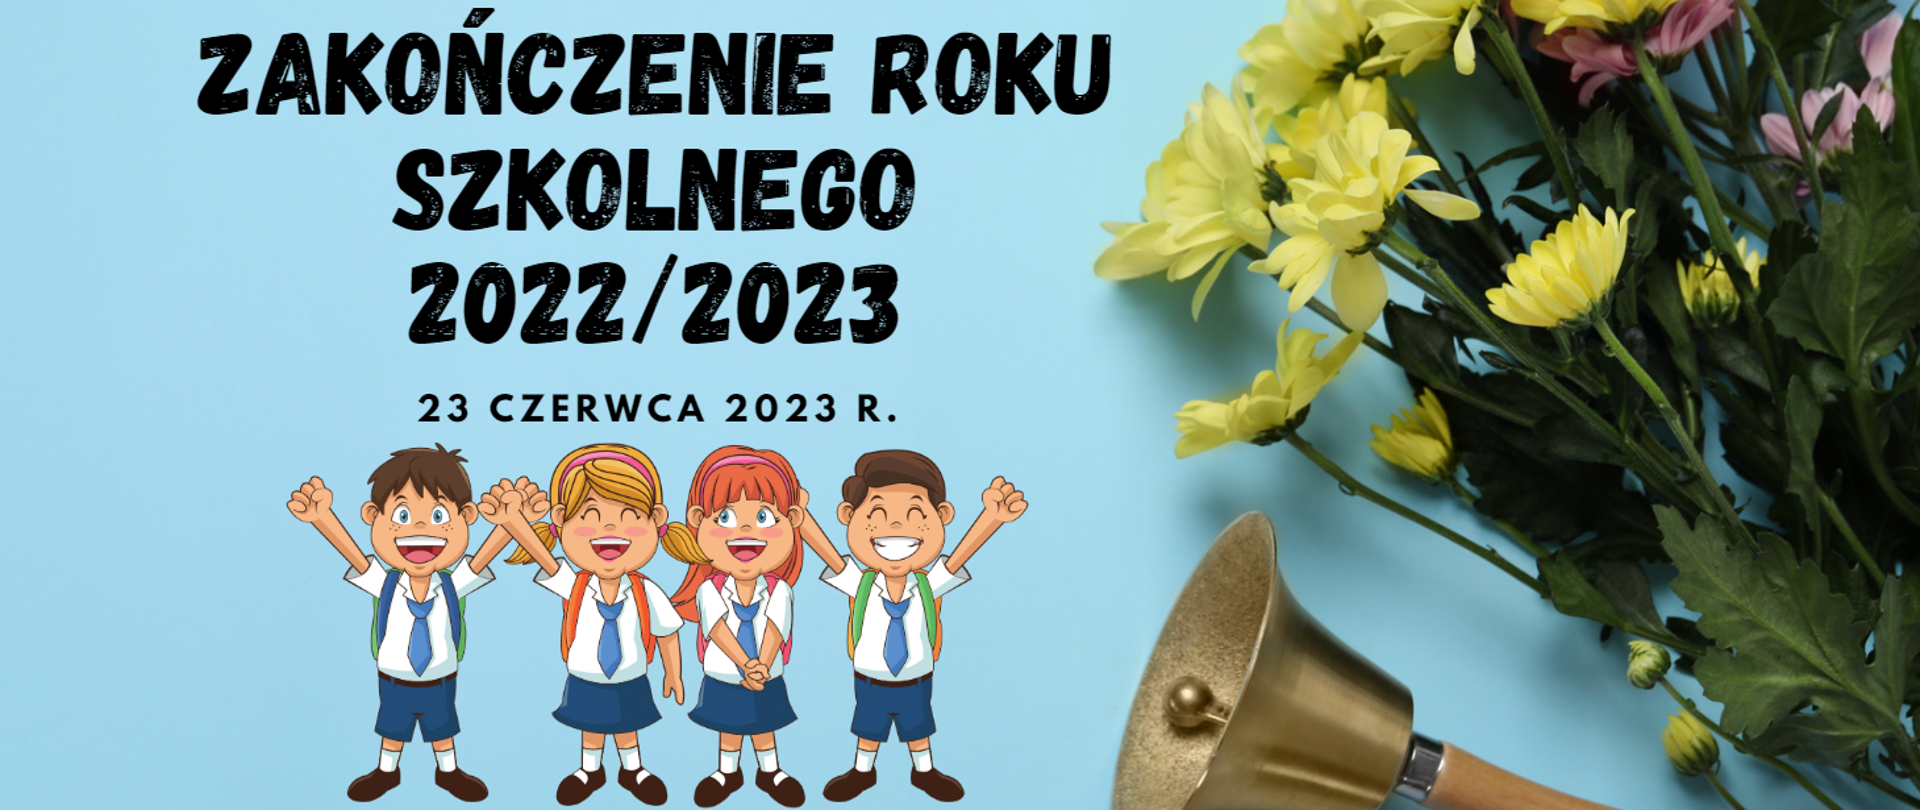 Zdjęcie przedstawia napis "Zakończenie roku szkolnego 2022/2023" na jasnoniebieskim tle z kwiatami, dzwonkiem szkolnym i postaciami śmiejących się dzieci